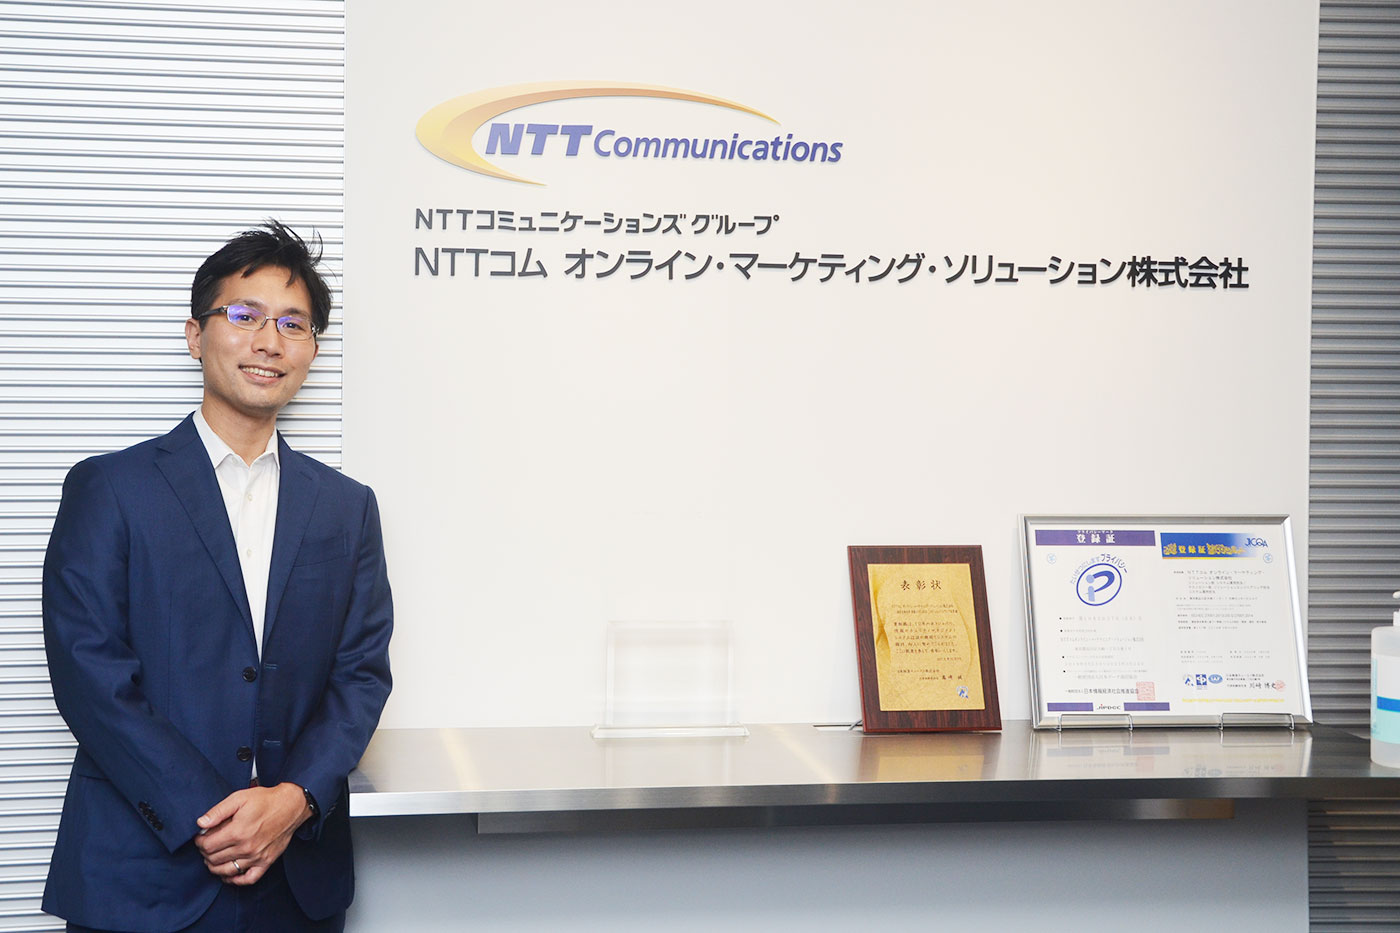 NTTコム オンライン・マーケティング・ソリューション株式会社 ビジネスメッセージ・サービス部 部長 黒田 和宏様